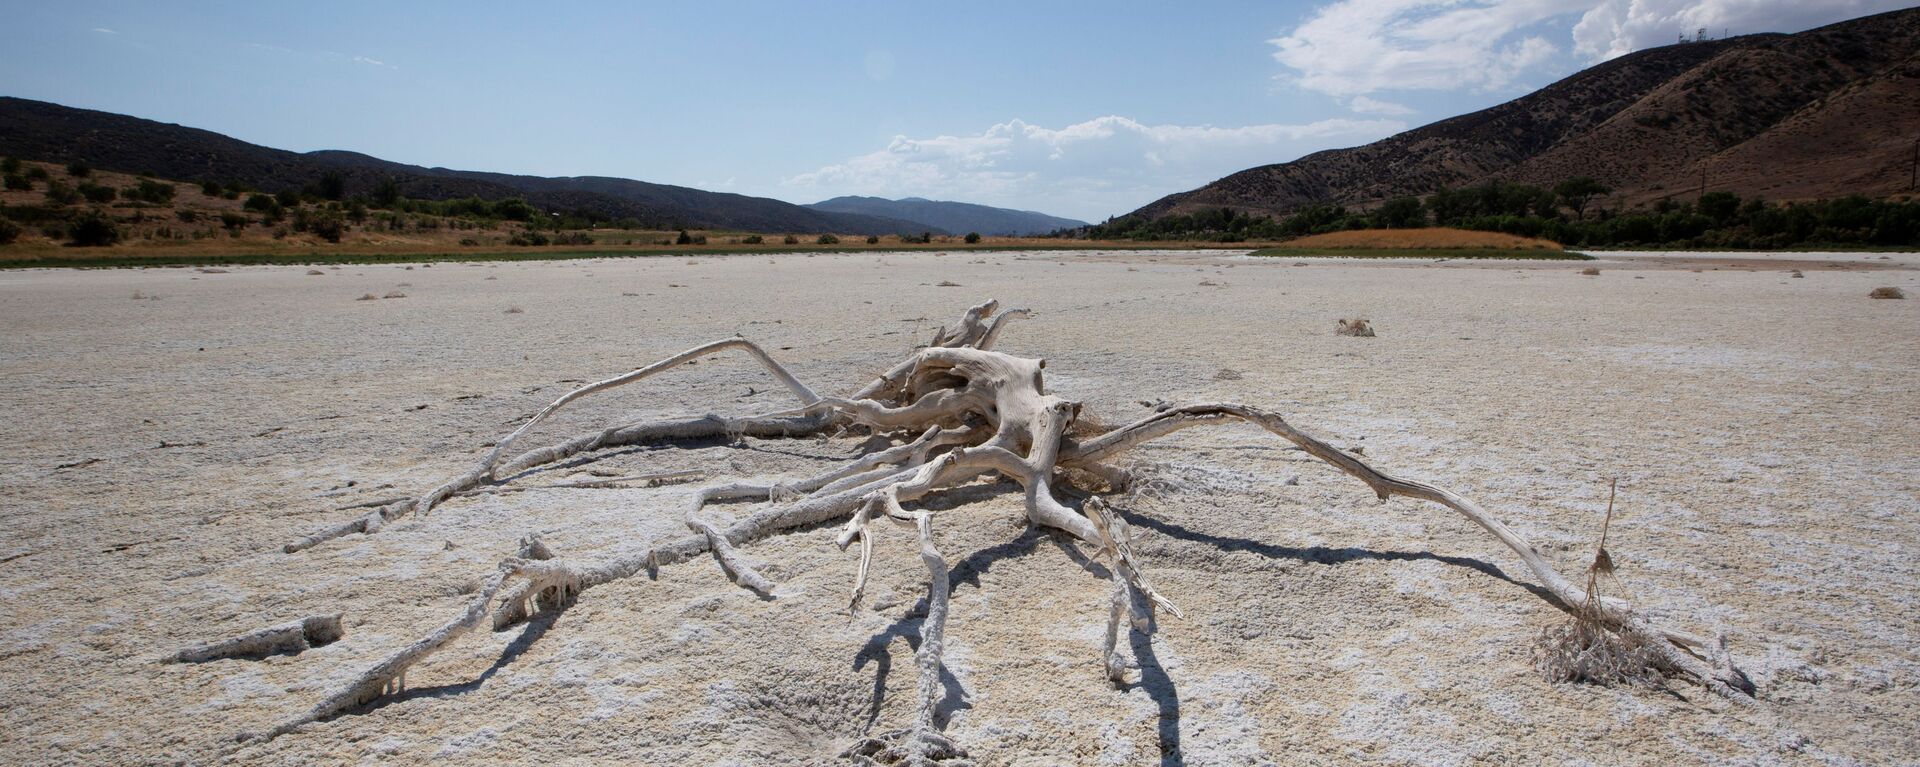 ABD'nin batı yakasında aşırı sıcak-kuraklık döngüsünde kuruyan Elizabeth Gölü (Los Angeles, Kaliforniya) - Sputnik Türkiye, 1920, 09.07.2021